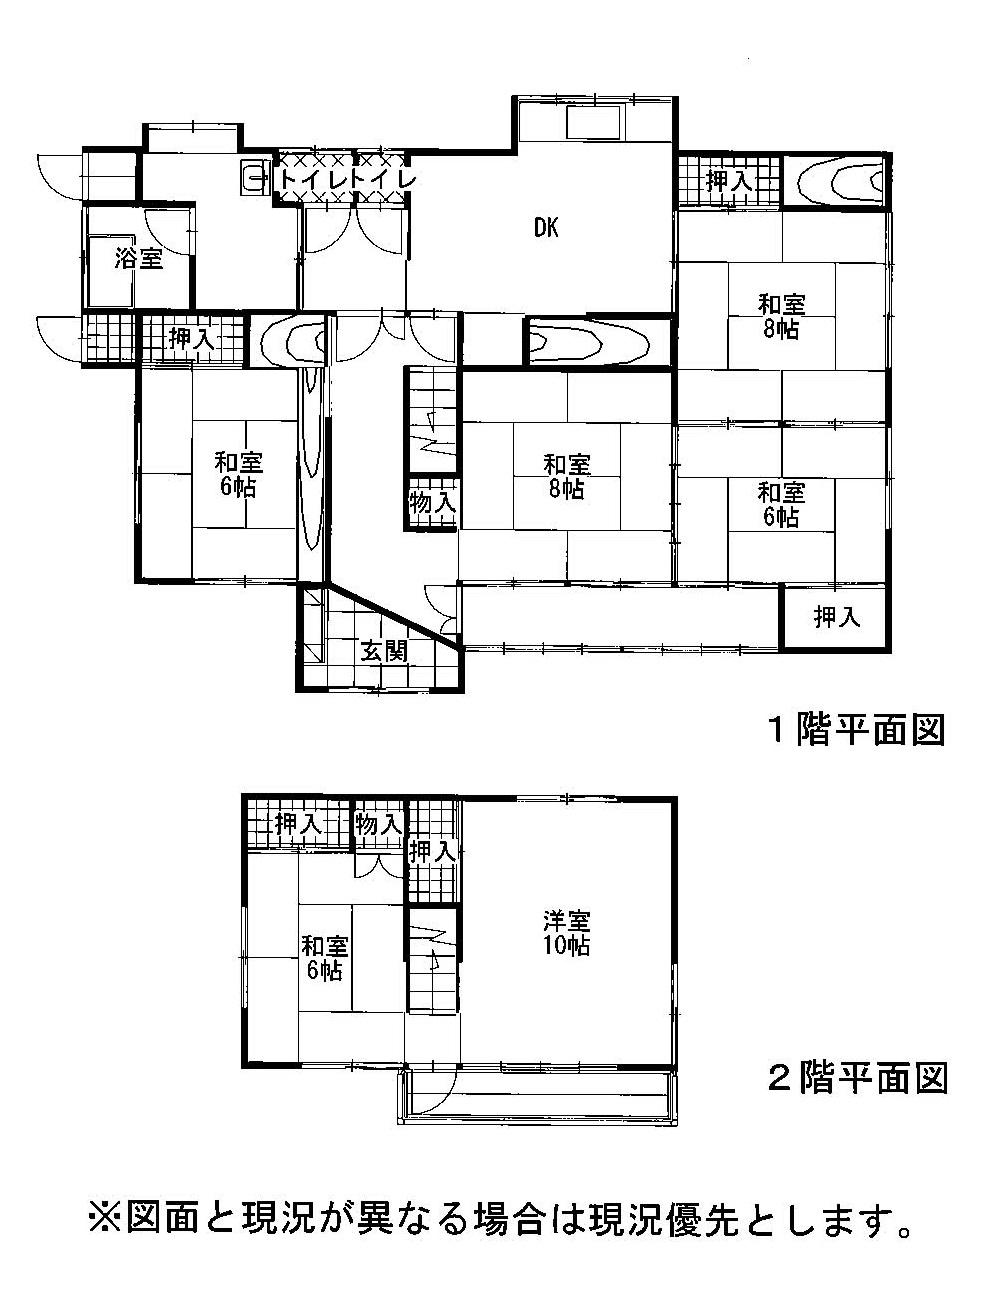 Floor plan. 5.8 million yen, 6DK, Land area 286.01 sq m , Building area 145 sq m 6DK